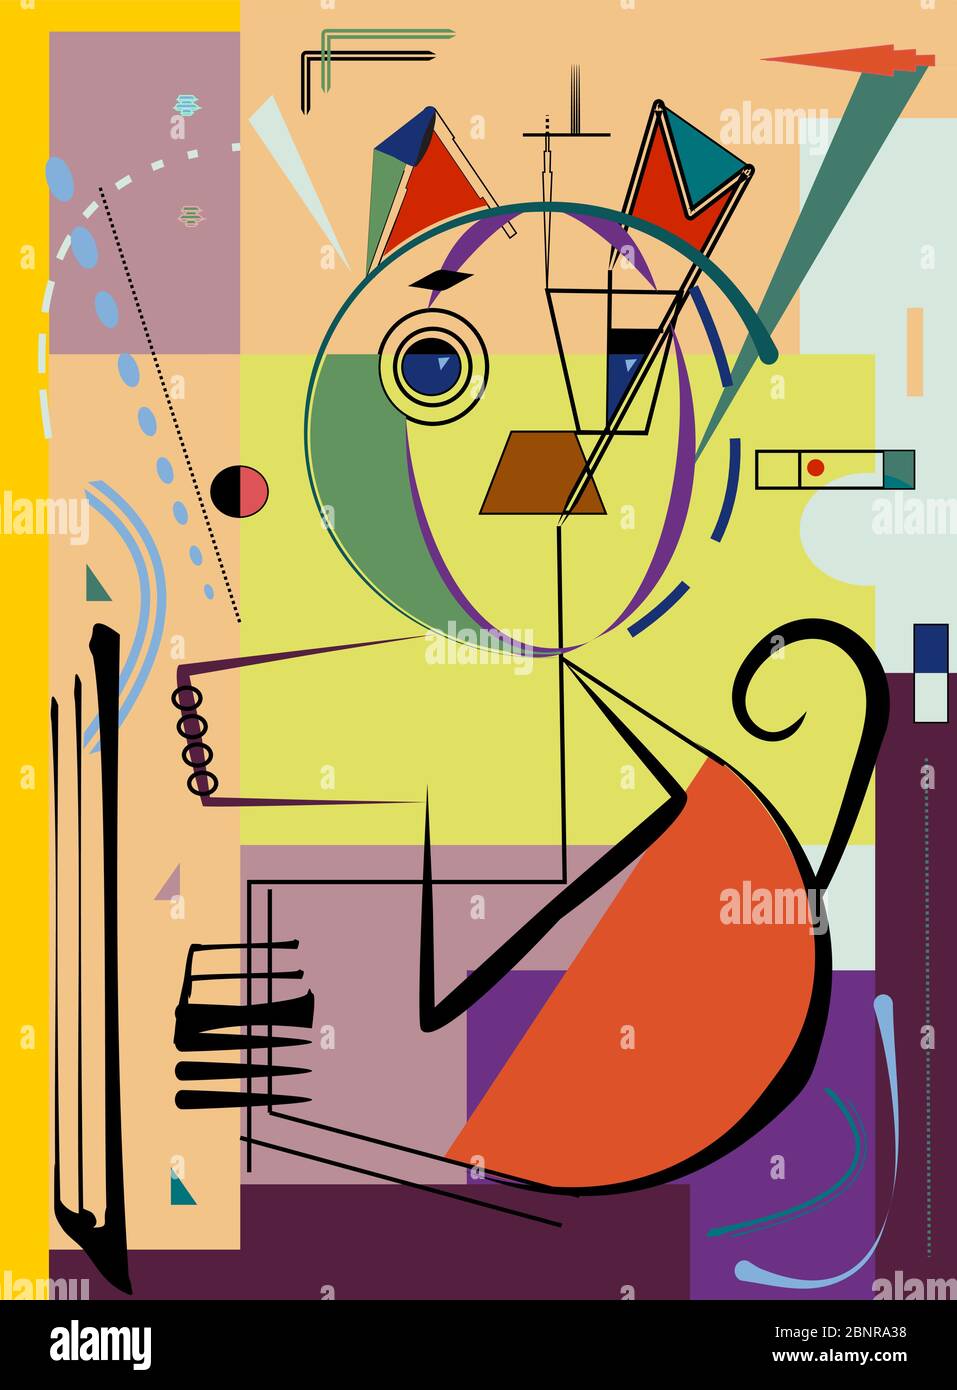 composizione di forme astratte colorate, cane stilizzato, su sfondo giallo espressionismo stile artistico Illustrazione Vettoriale